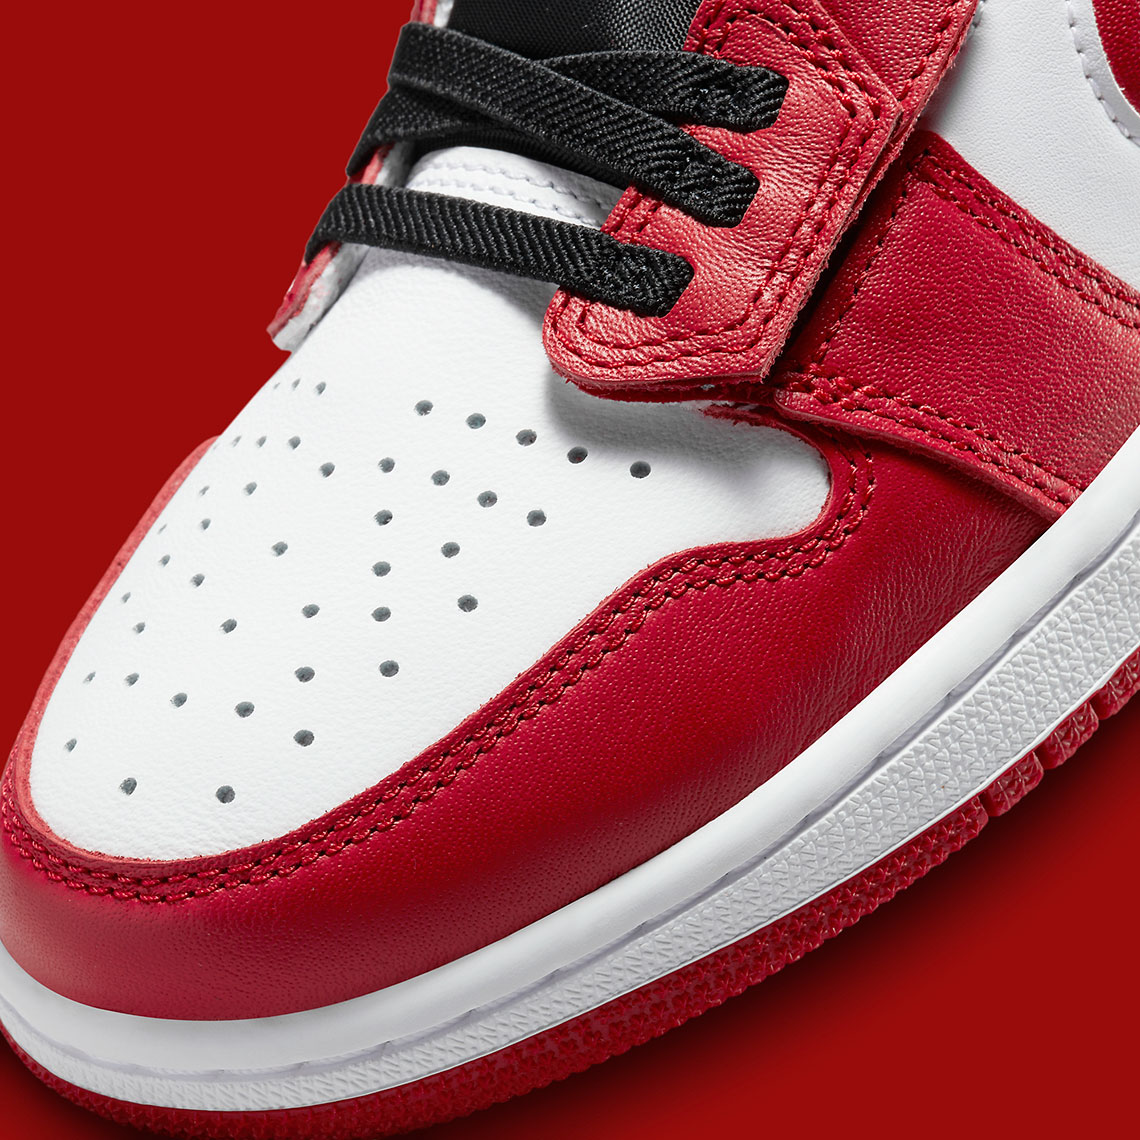 Air Jordan 1 Low Flyease Red Black Release Date 4